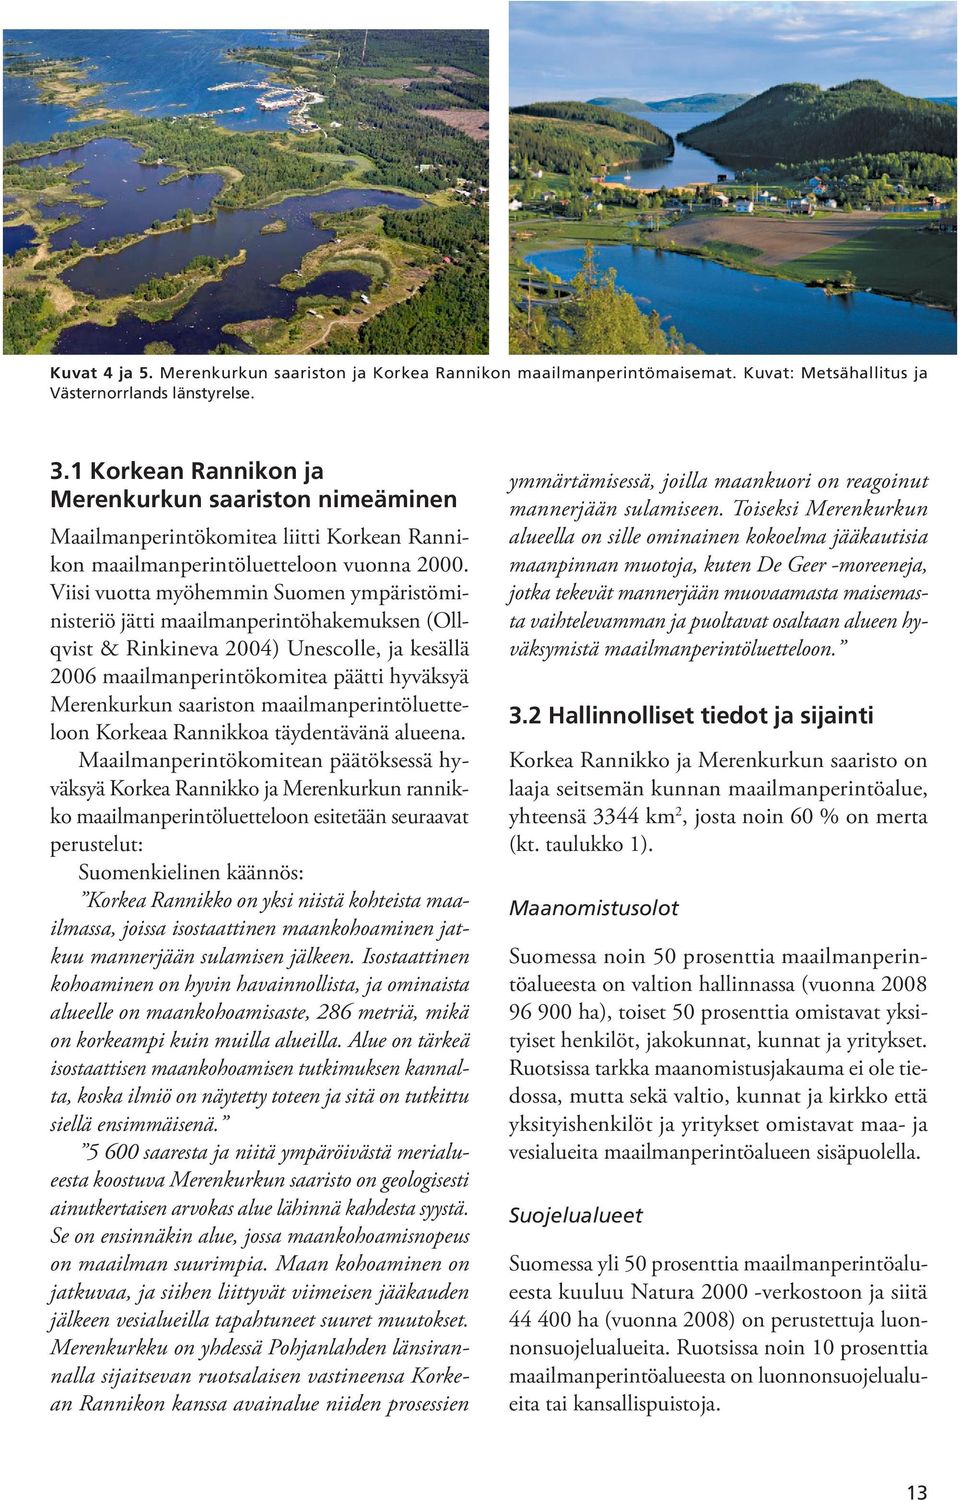 Viisi vuotta myöhemmin Suomen ympäristöministeriö jätti maailmanperintöhakemuksen (Ollqvist & Rinkineva 2004) Unescolle, ja kesällä 2006 maailmanperintökomitea päätti hyväksyä Merenkurkun saariston